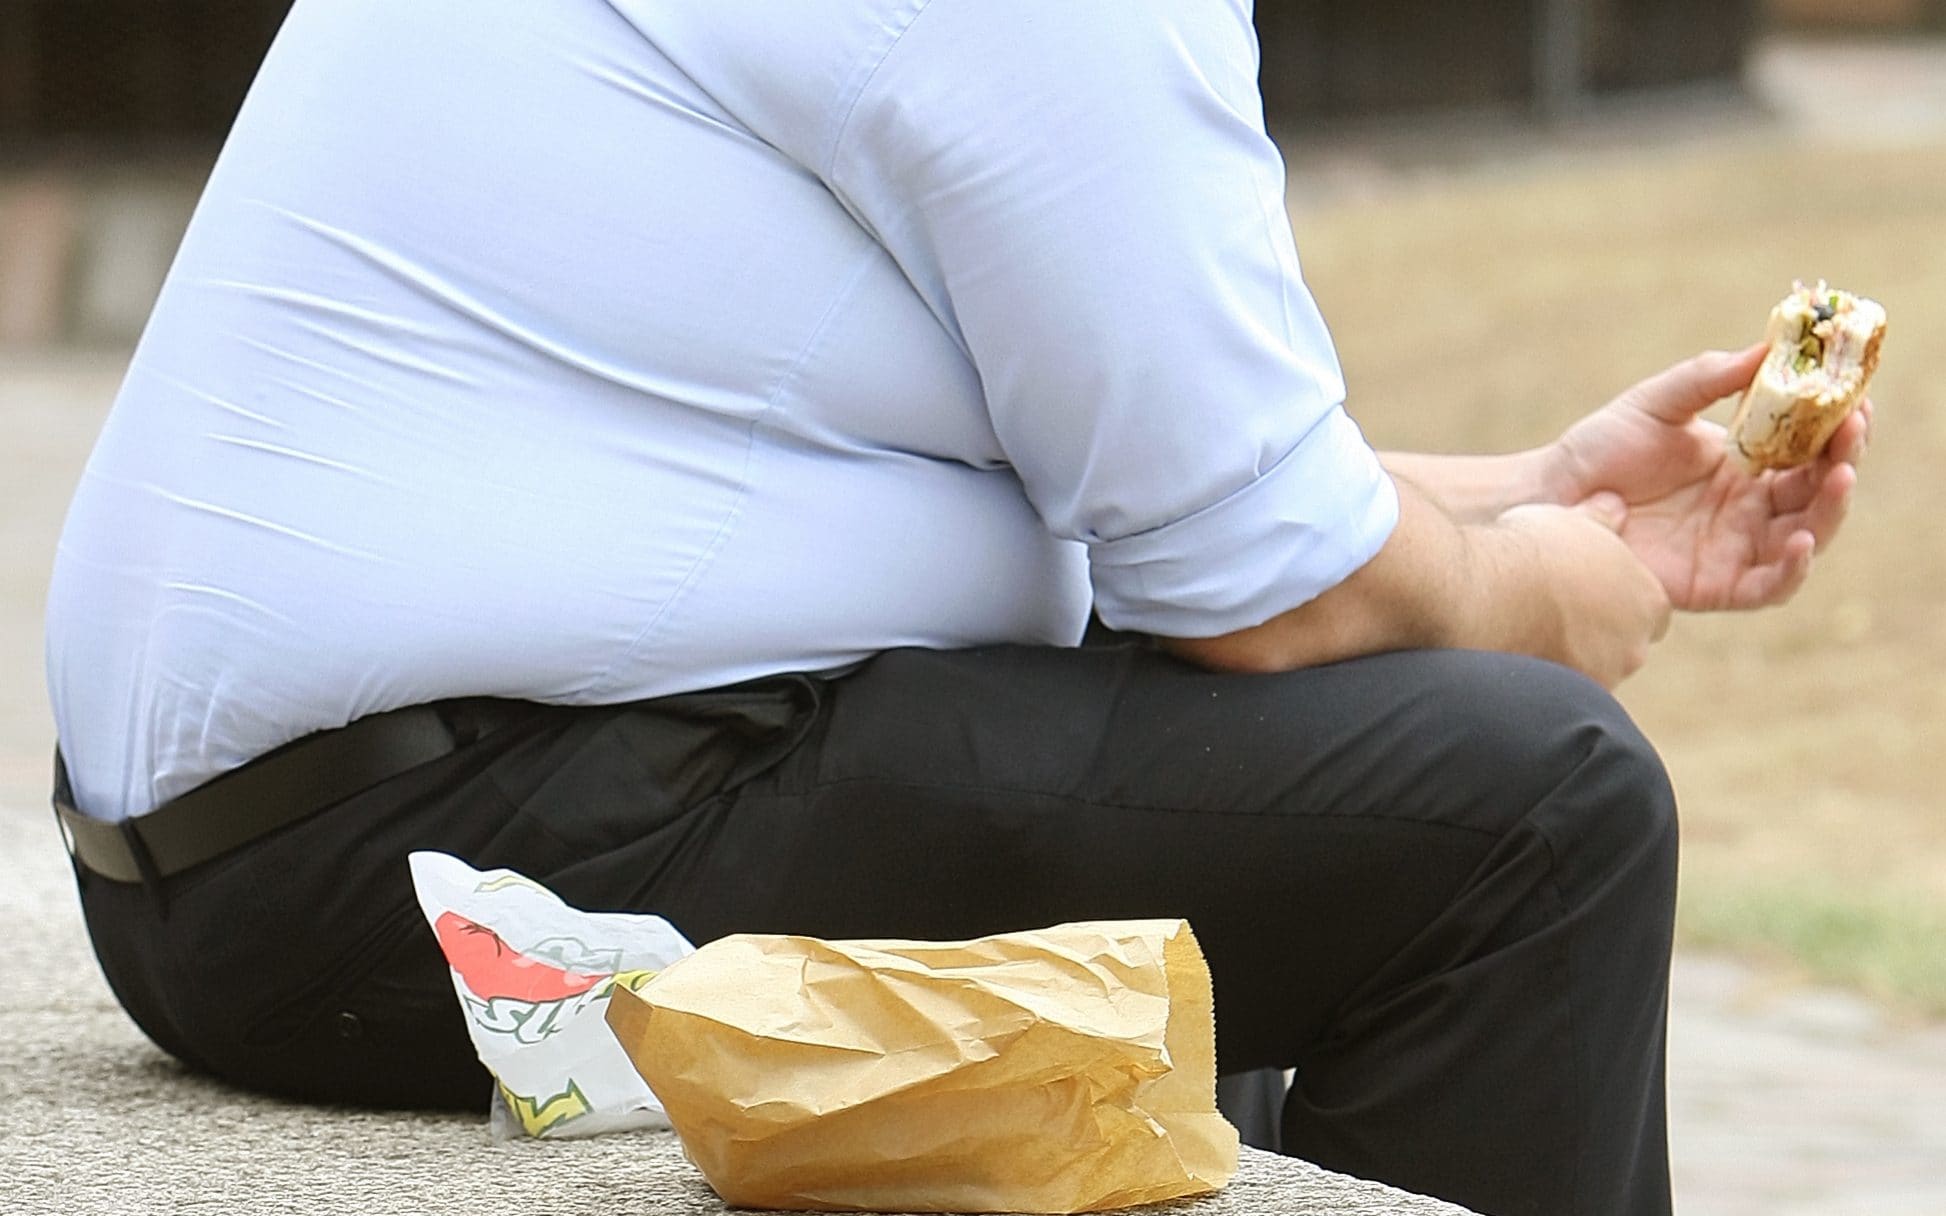 30 milioni di italiani a dieta perenne <br> E 25 milioni in sovrappeso o obesi <br> Arduo rinunciare ai piaceri della tavola